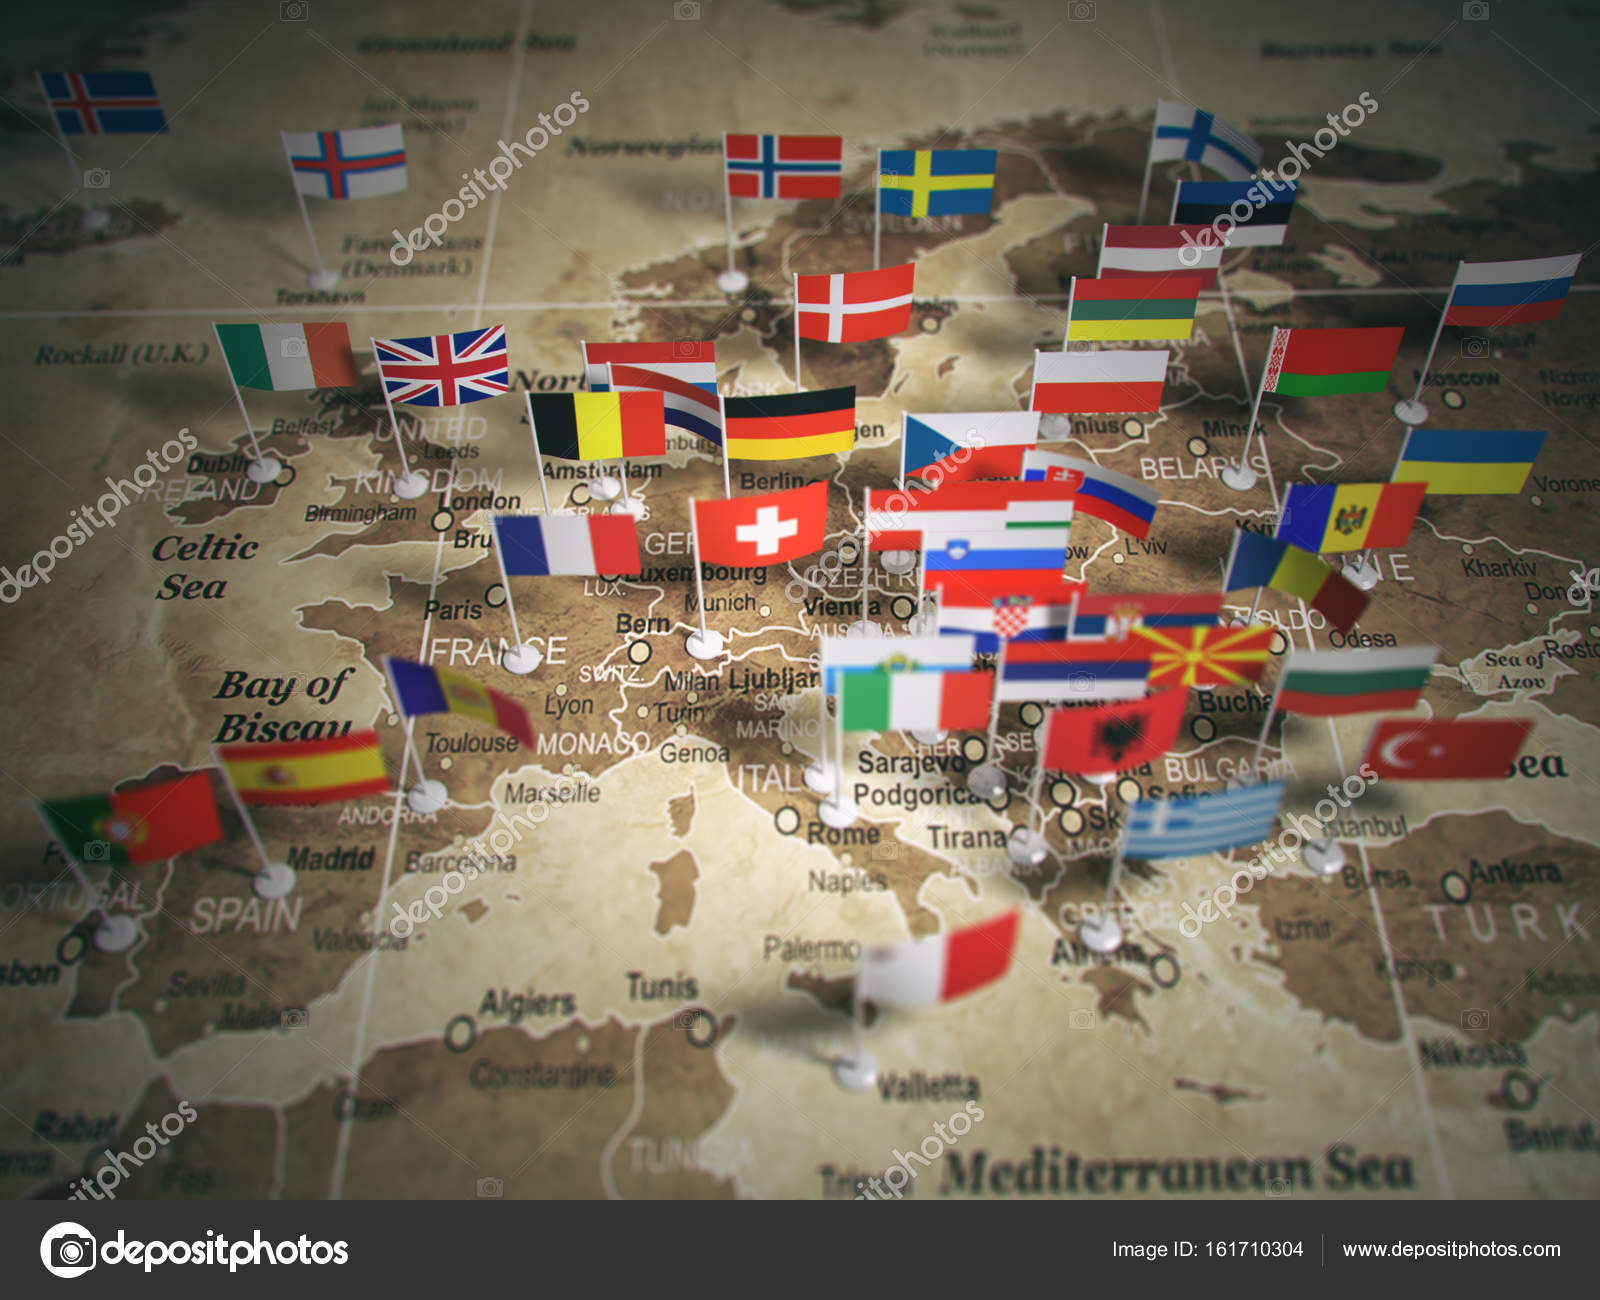 لیست مقالات مربوط به ارسال بار به کشورهای اروپایی